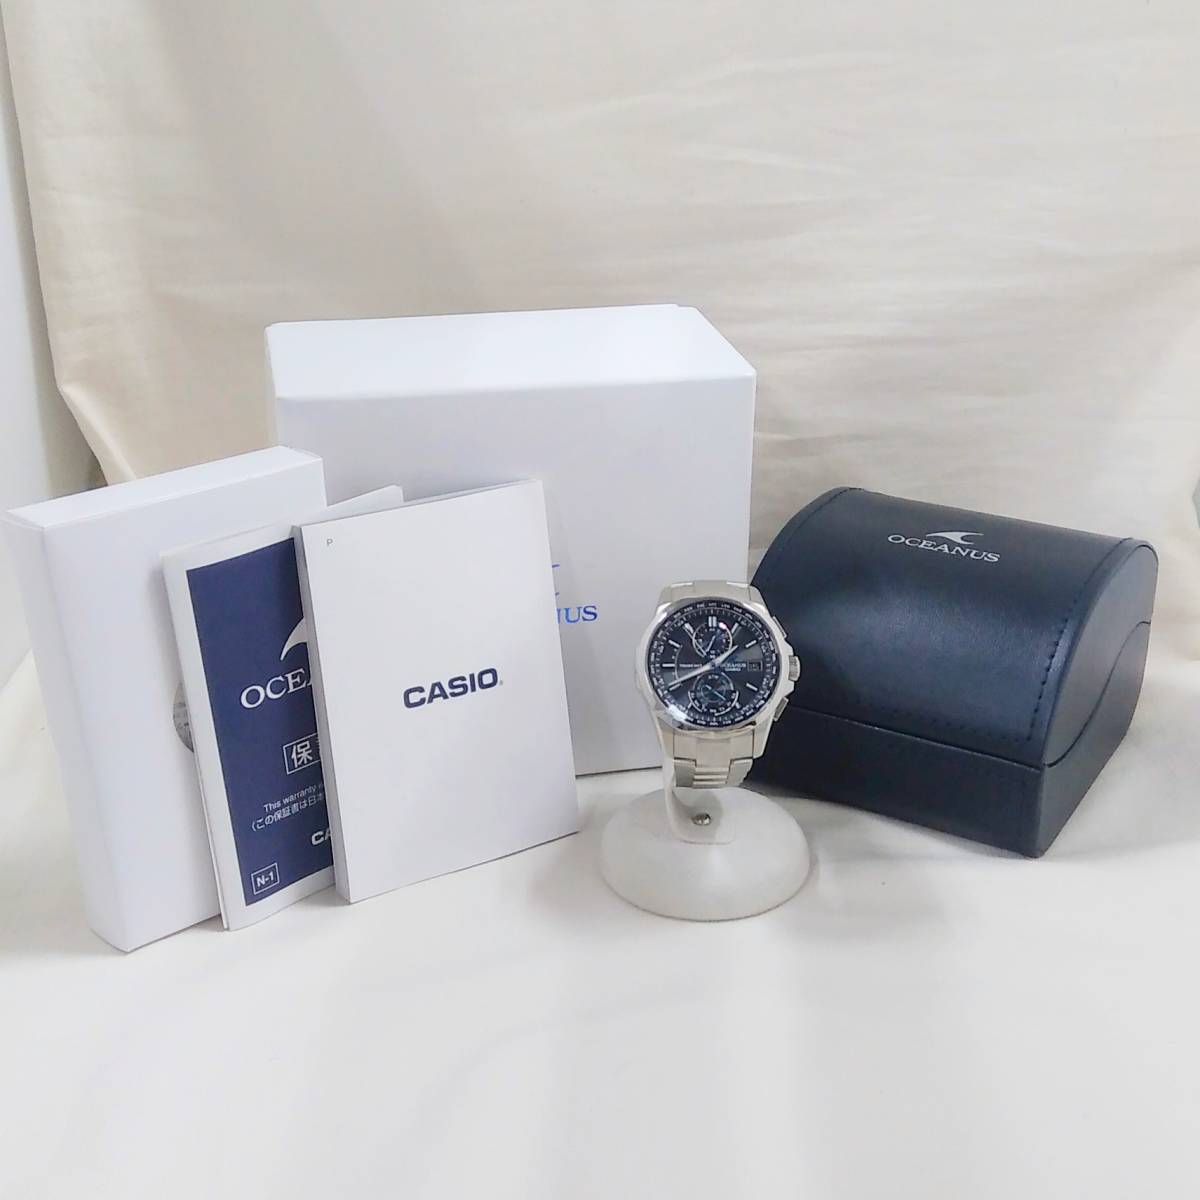 CASIO Casio /OCEANUS Ocean OCW-T25 радиоволны солнечный принадлежности есть наручные часы 